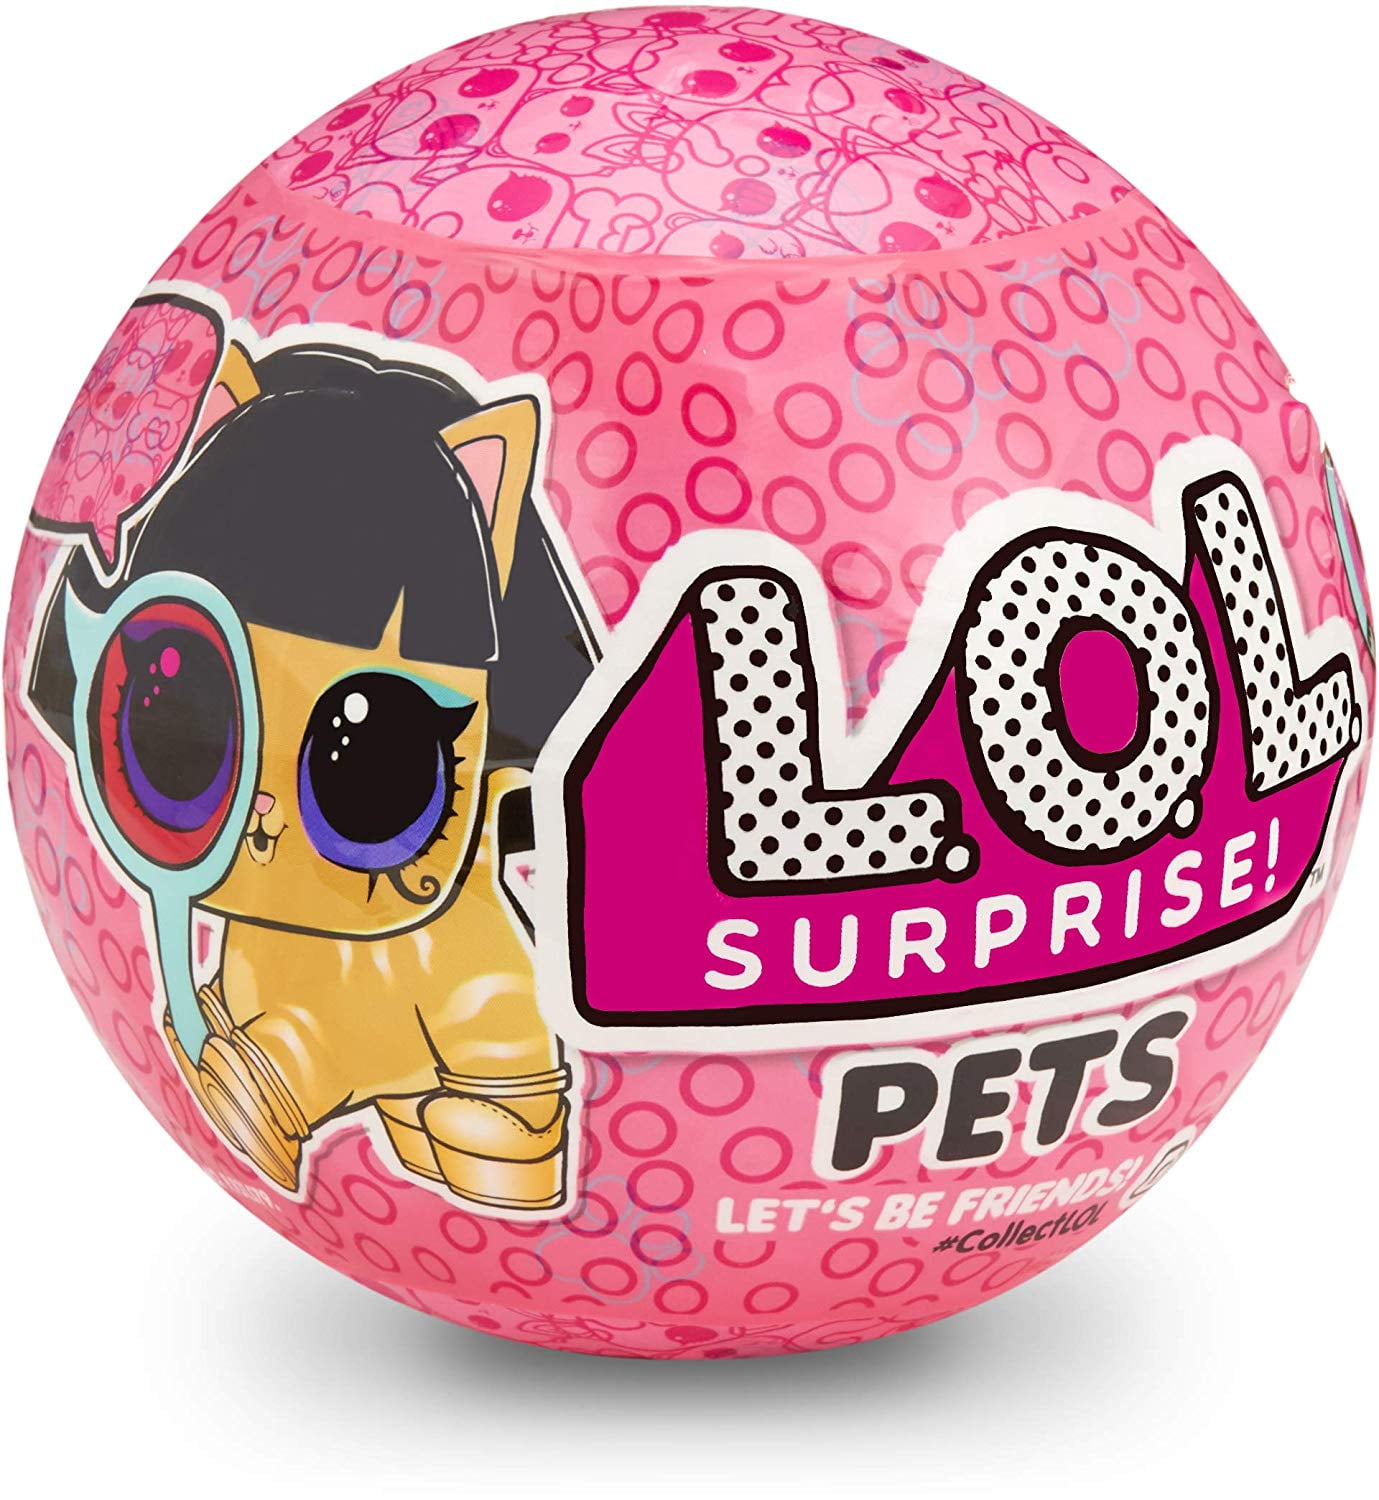 L.O.L. Surprise! Pets Surprise Eye Spy Series Animal With 7 Surprises